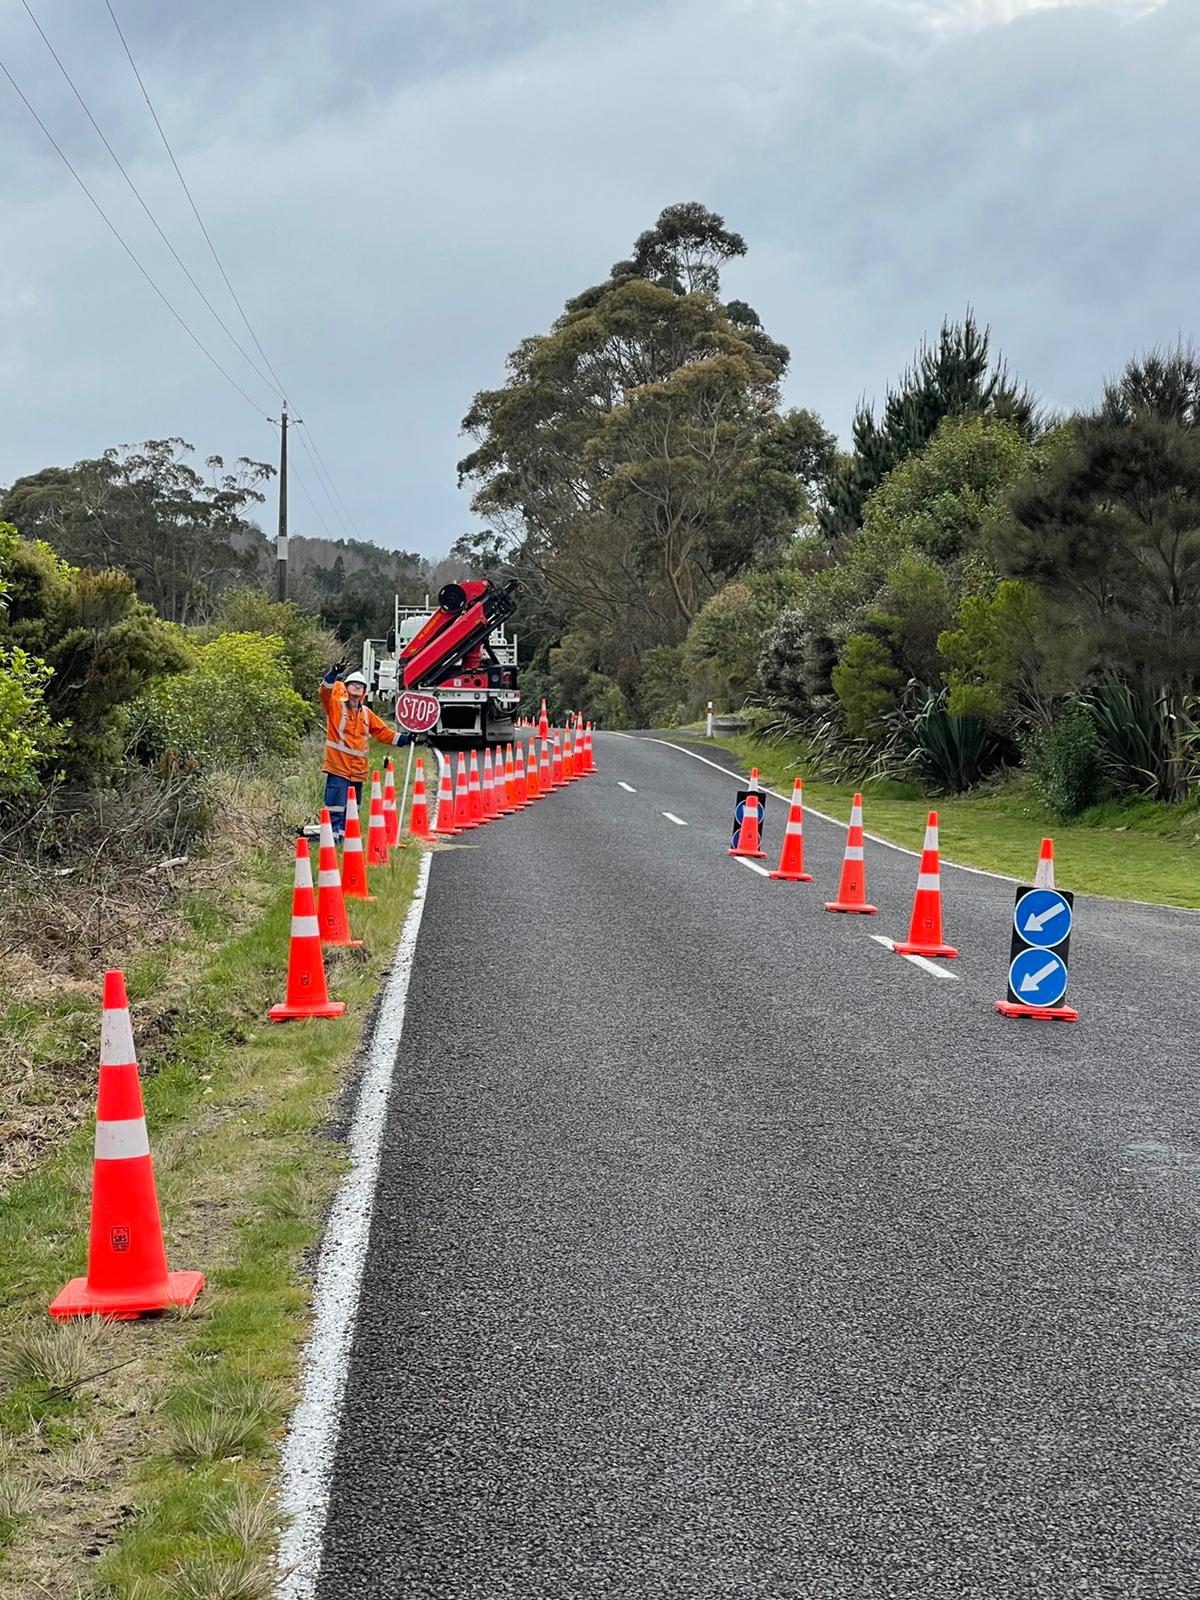 road cones on a road